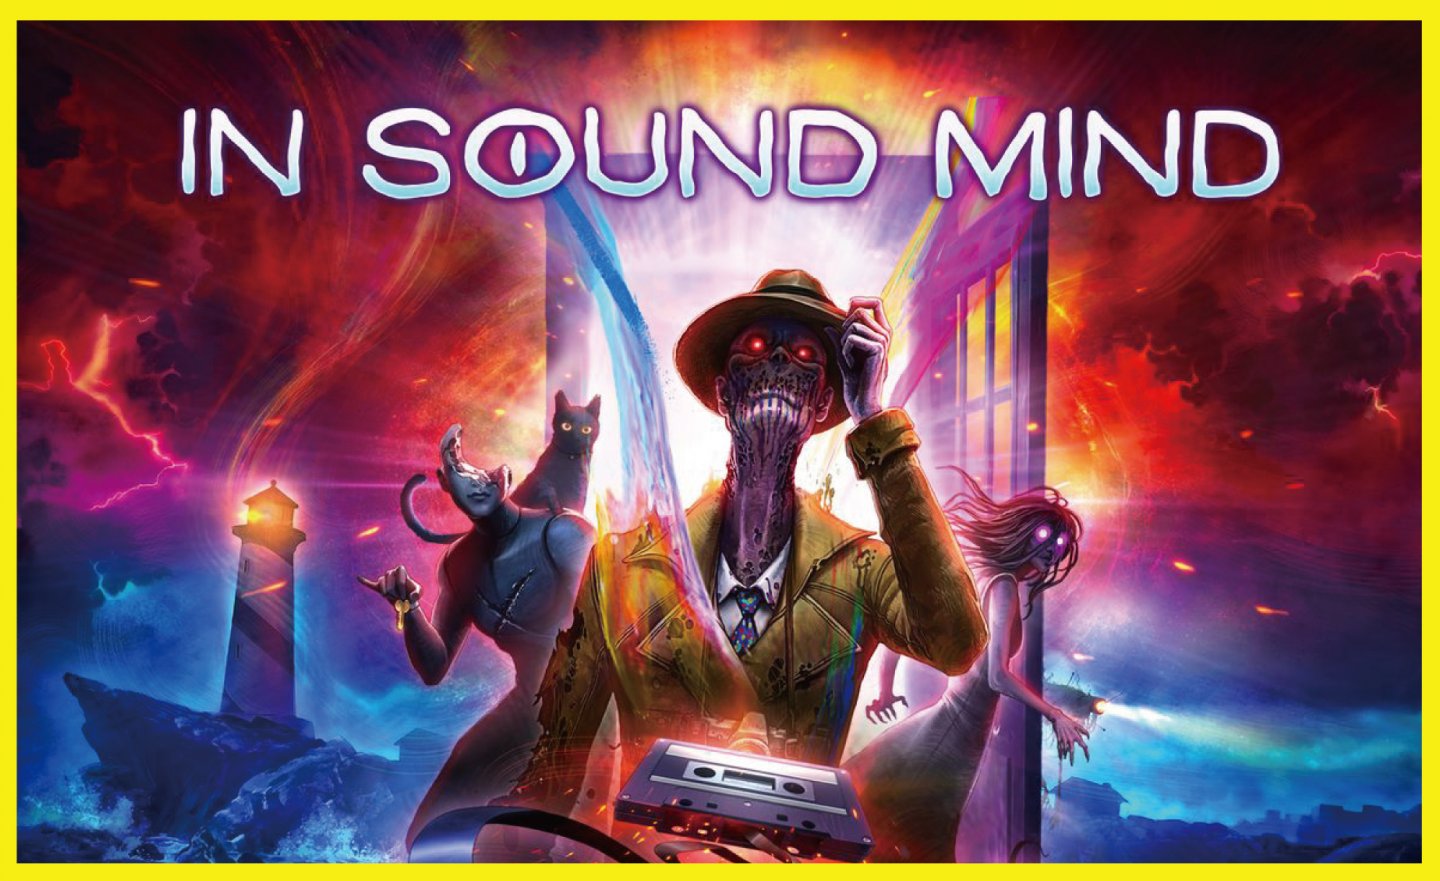 【限時免費】單人恐怖冒險遊戲《In Sound Mind》放送中，2022 年 3 月 24 日 23:00 前領取